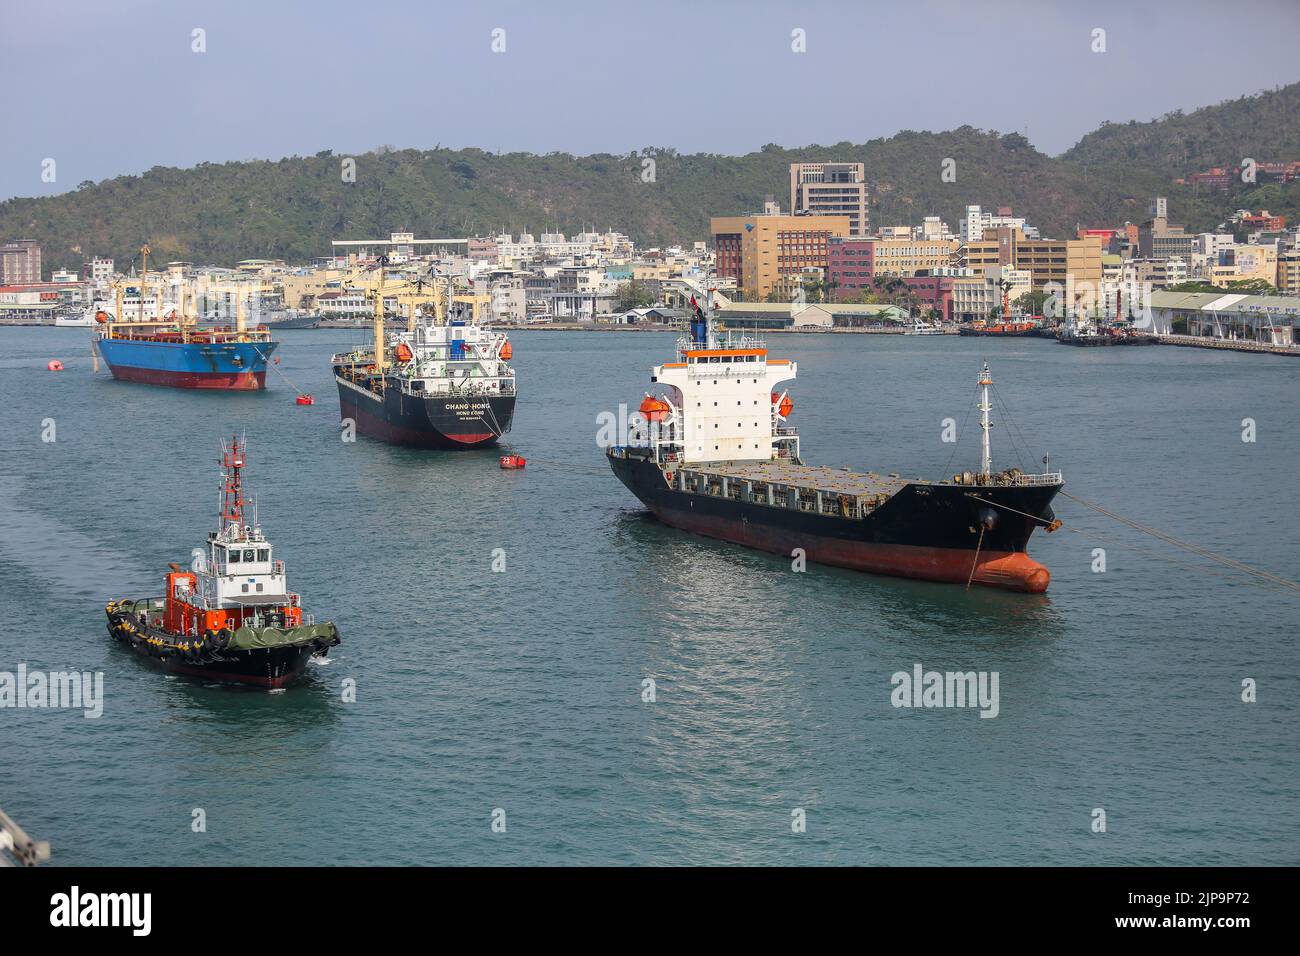 Port de Kaohsiung (高雄港), le plus grand port de Taïwan, avec des cargaisons, des navires de la marine militaire, des quais et des remorqueurs Banque D'Images